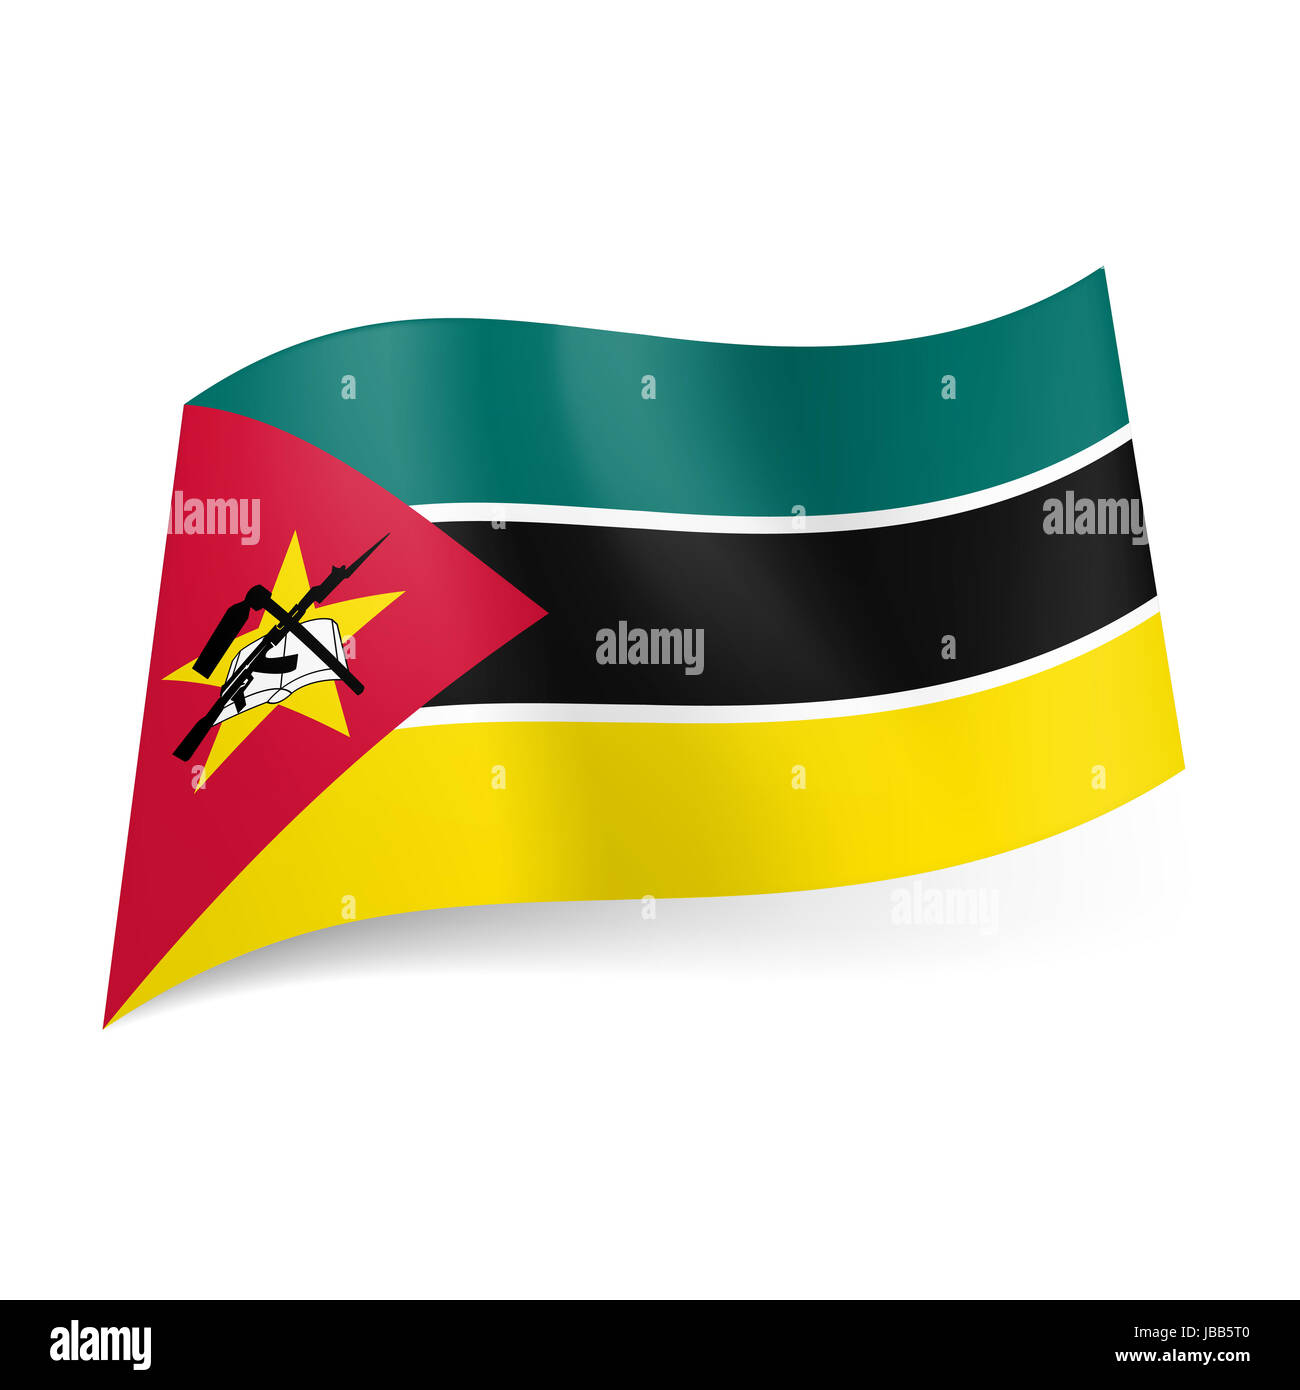 Drapeau national du Mozambique : vert, noir et jaune bandes horizontales, star, livre et signes d'armes nucléaires dans la région de triangle rouge sur le côté gauche Banque D'Images